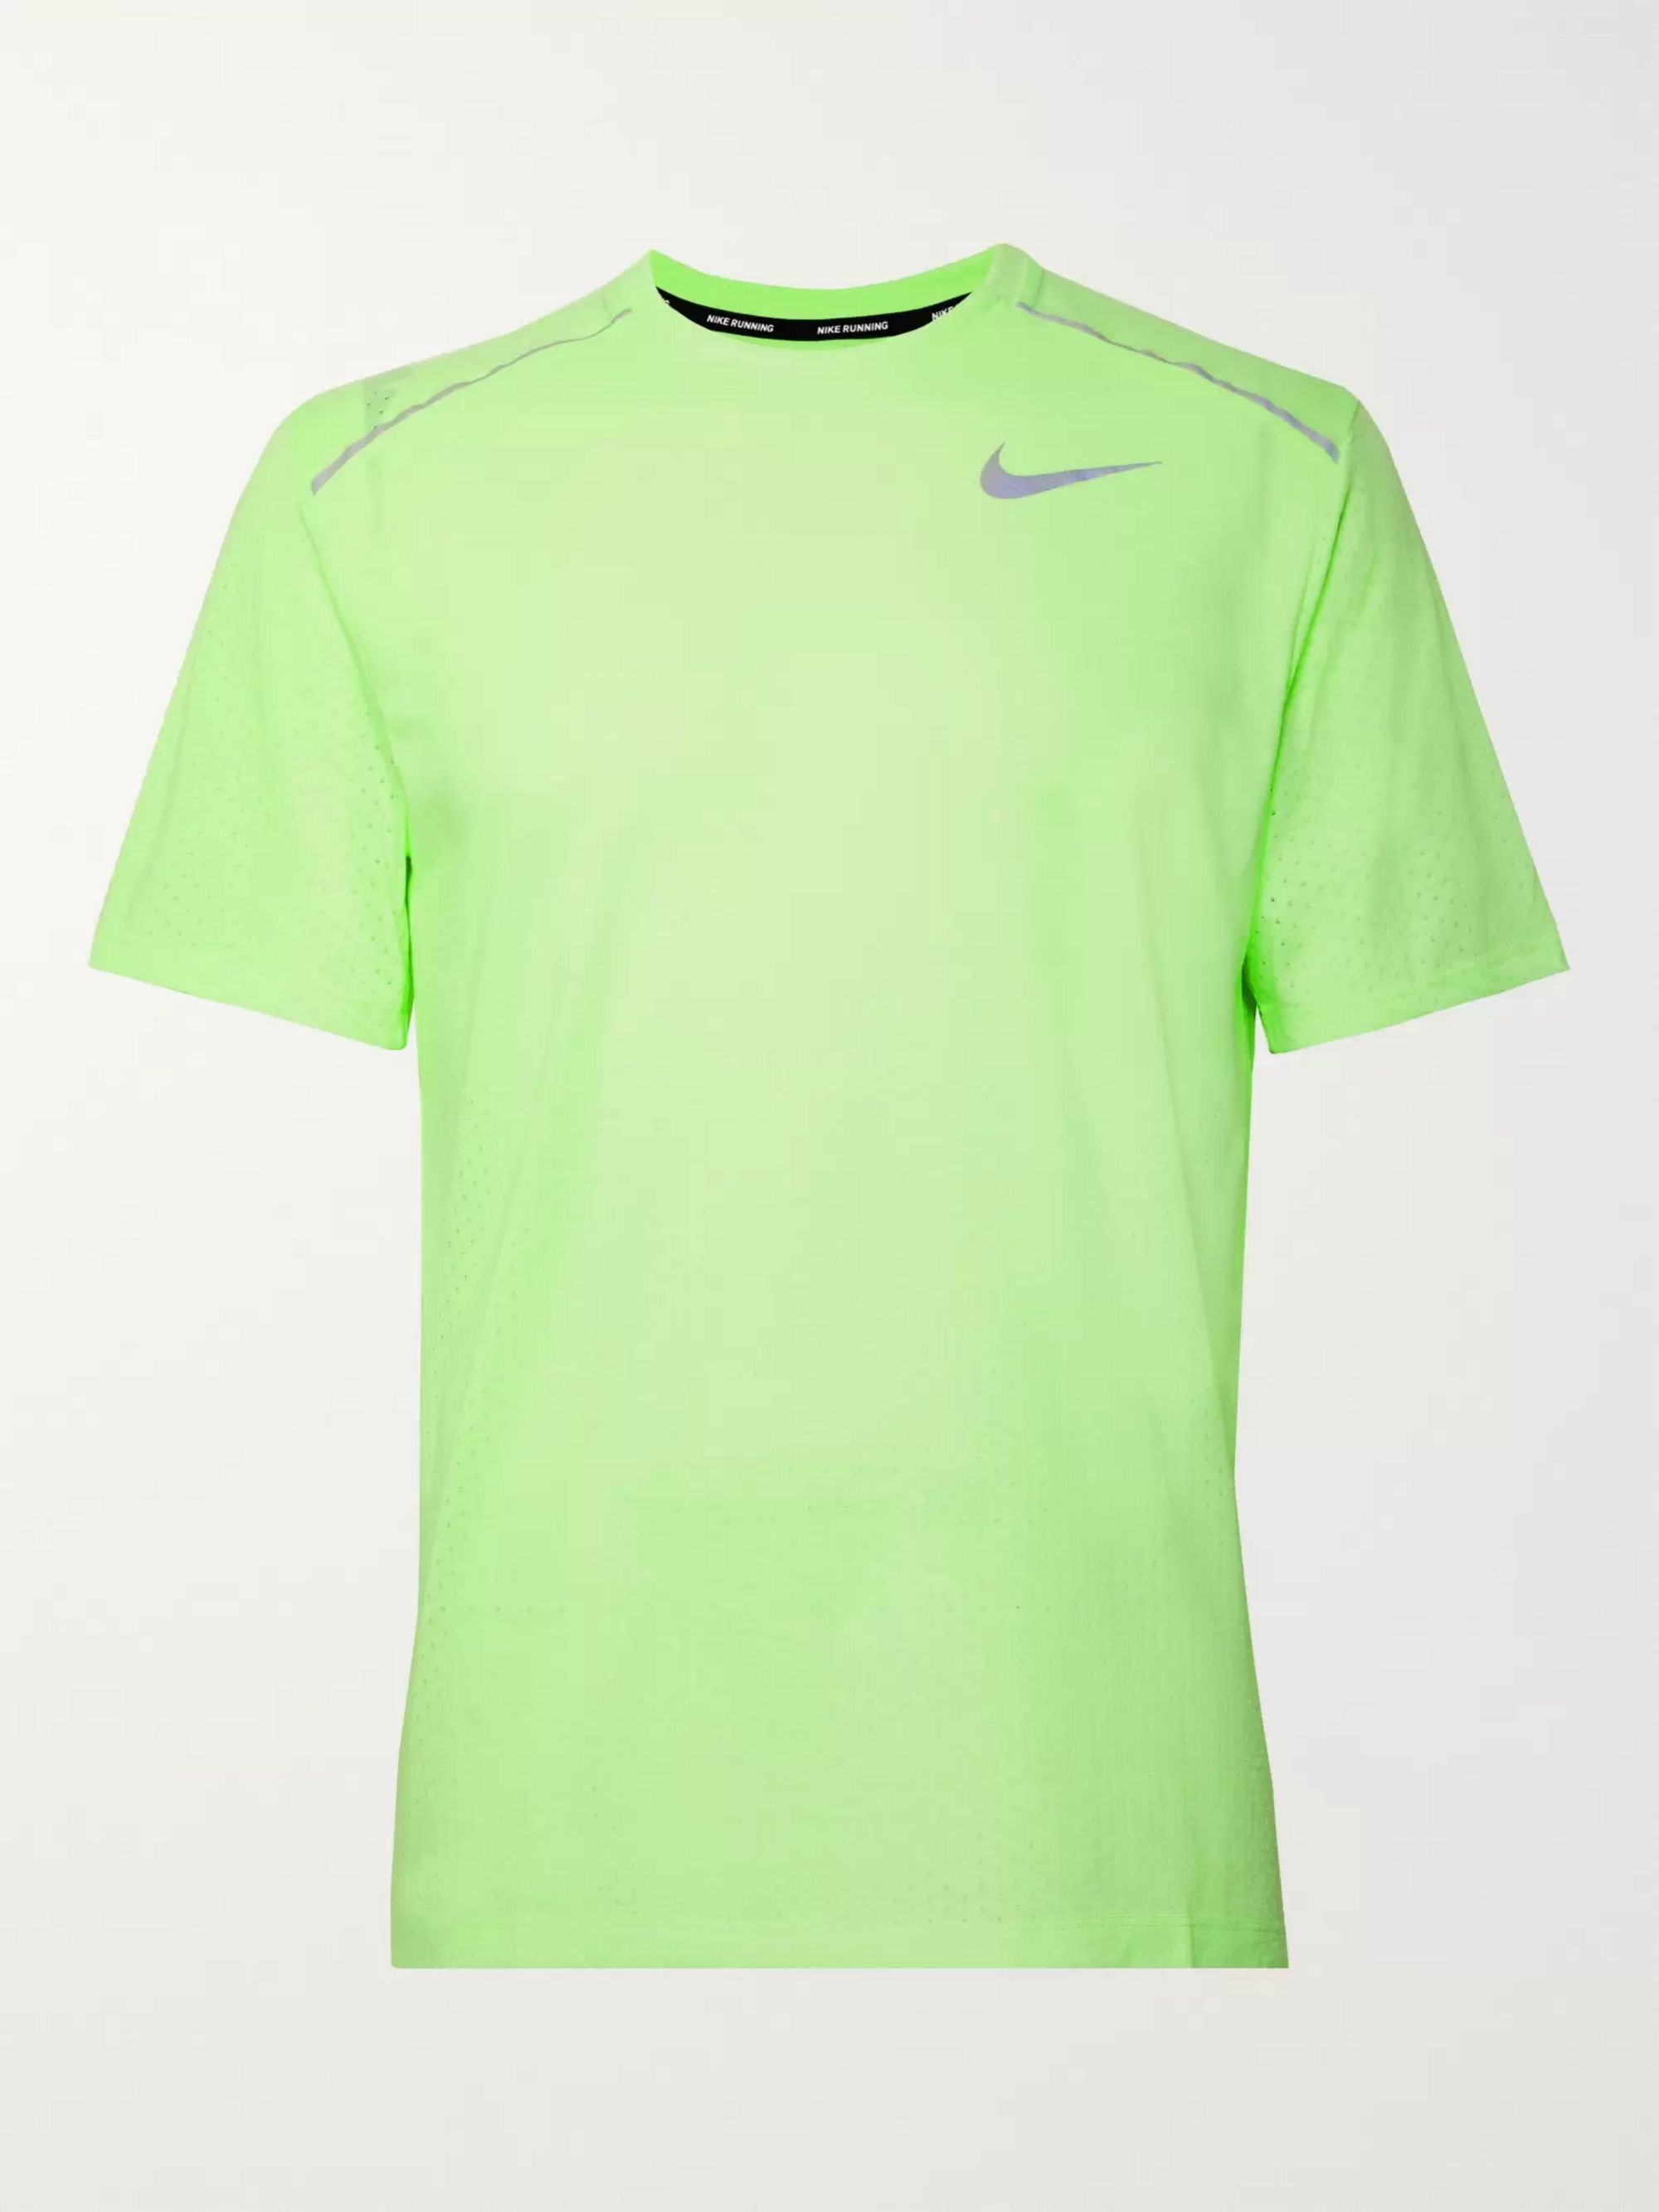 neon green nike shirt